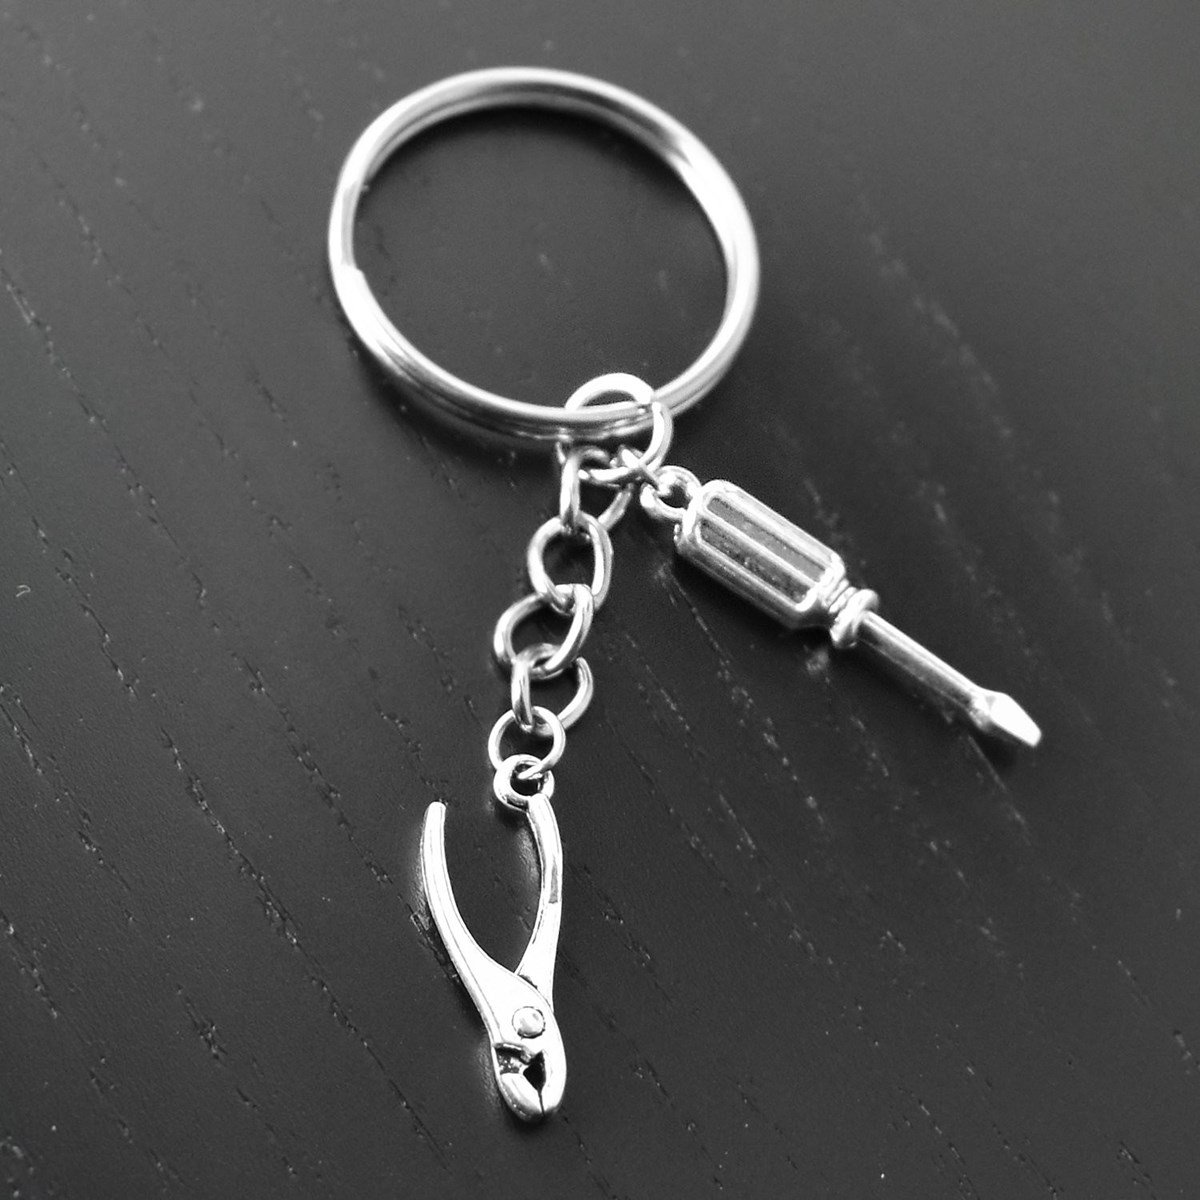 Porte-clés bricoleur outils pince tourne vis argenté - vue 4